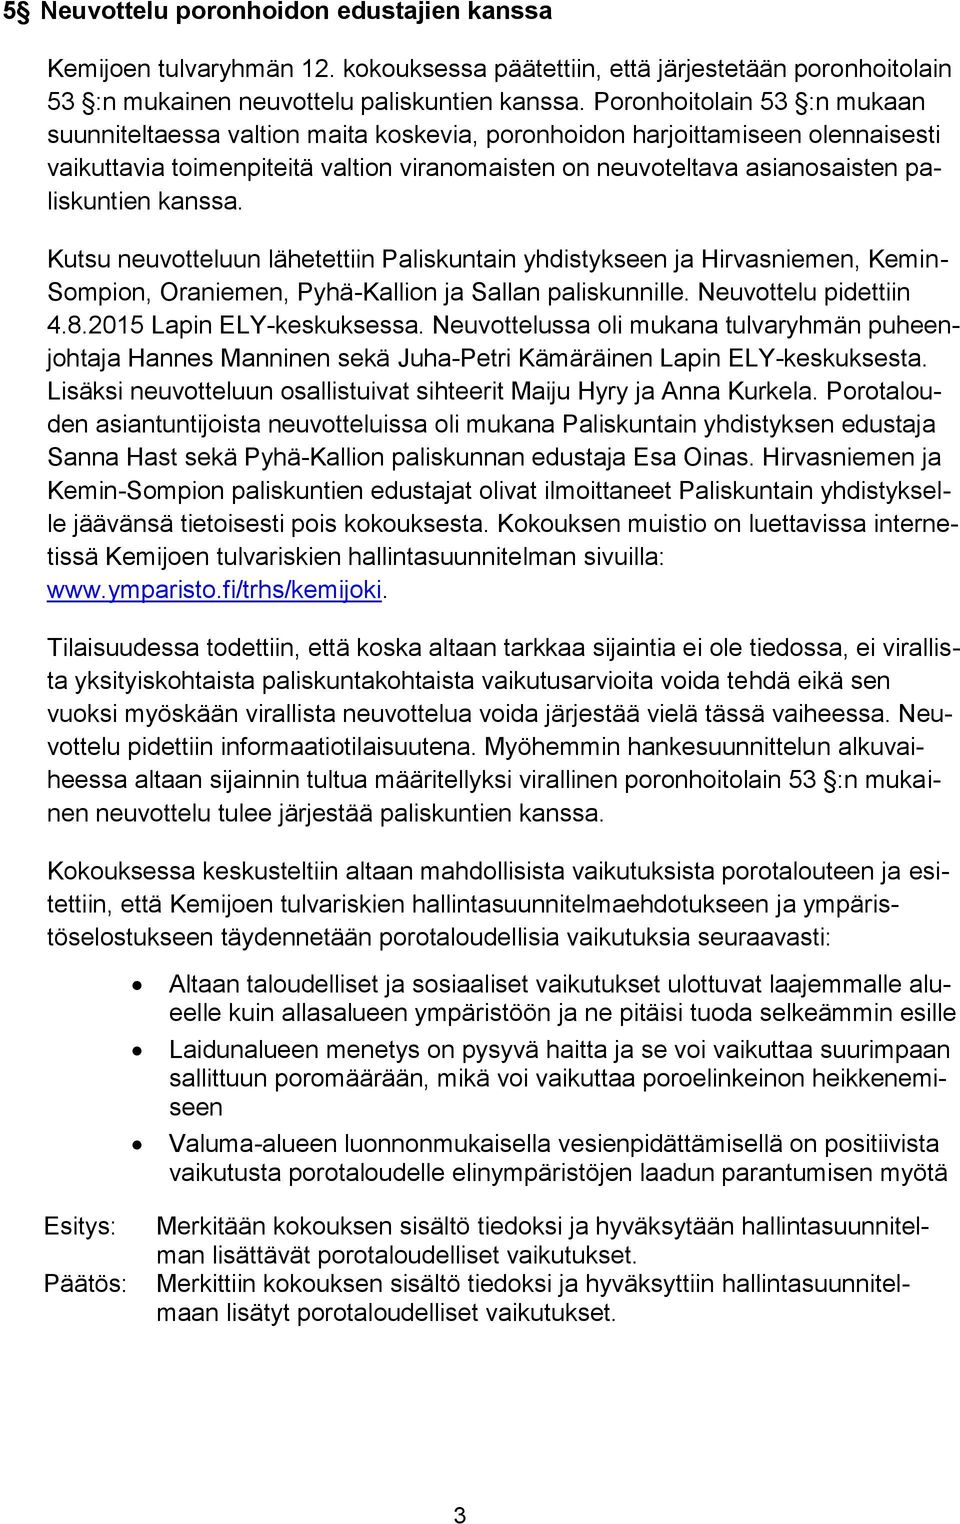 kanssa. Kutsu neuvotteluun lähetettiin Paliskuntain yhdistykseen ja Hirvasniemen, Kemin- Sompion, Oraniemen, Pyhä-Kallion ja Sallan paliskunnille. Neuvottelu pidettiin 4.8.2015 Lapin ELY-keskuksessa.